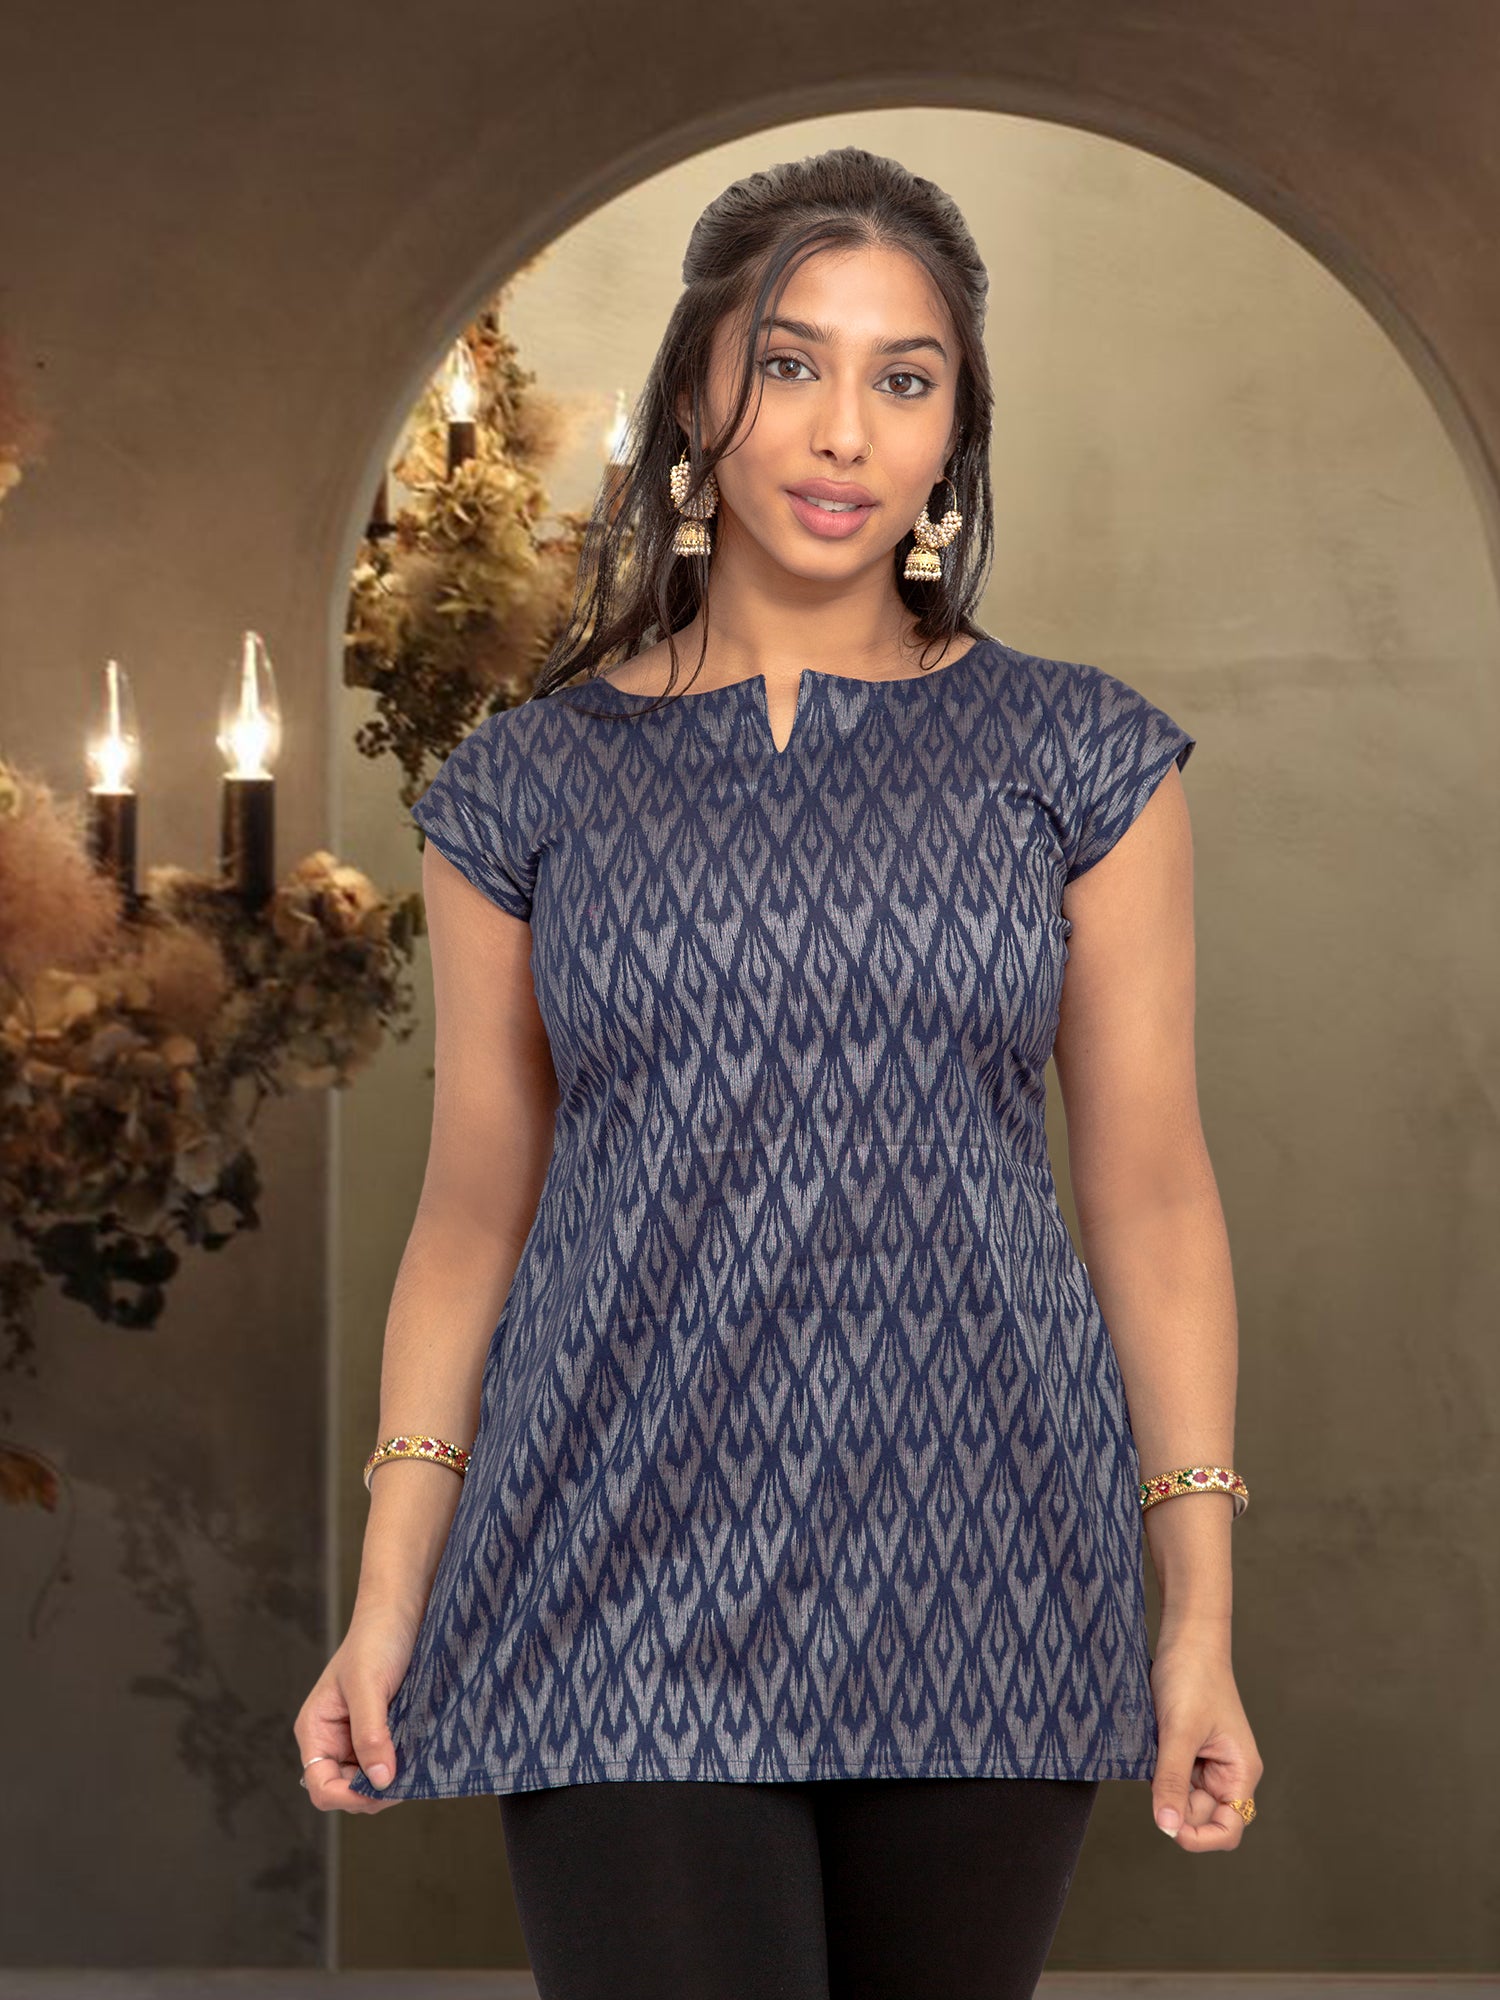 Midnight Blue Printed Short Top | Women's Tops | Modern Indian Wear  | Indian Attire For Women | Women's Tops | Indian Short Tops | Indian Wear for Women | Casual Indian Dress